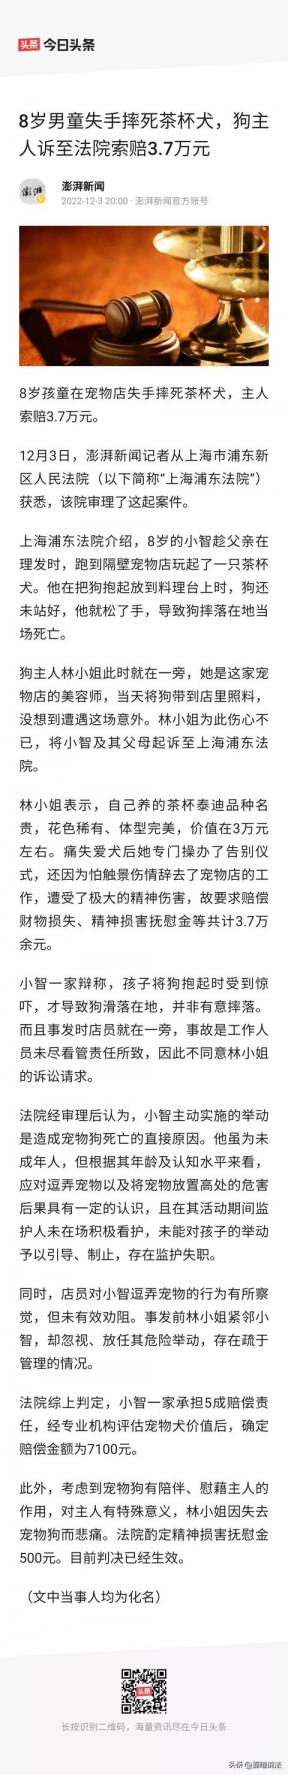 上海8岁男童误将茶杯犬摔死，主人索赔3.7万遭拒：自己没看好怪谁-第8张-宠物相关-宝佳网